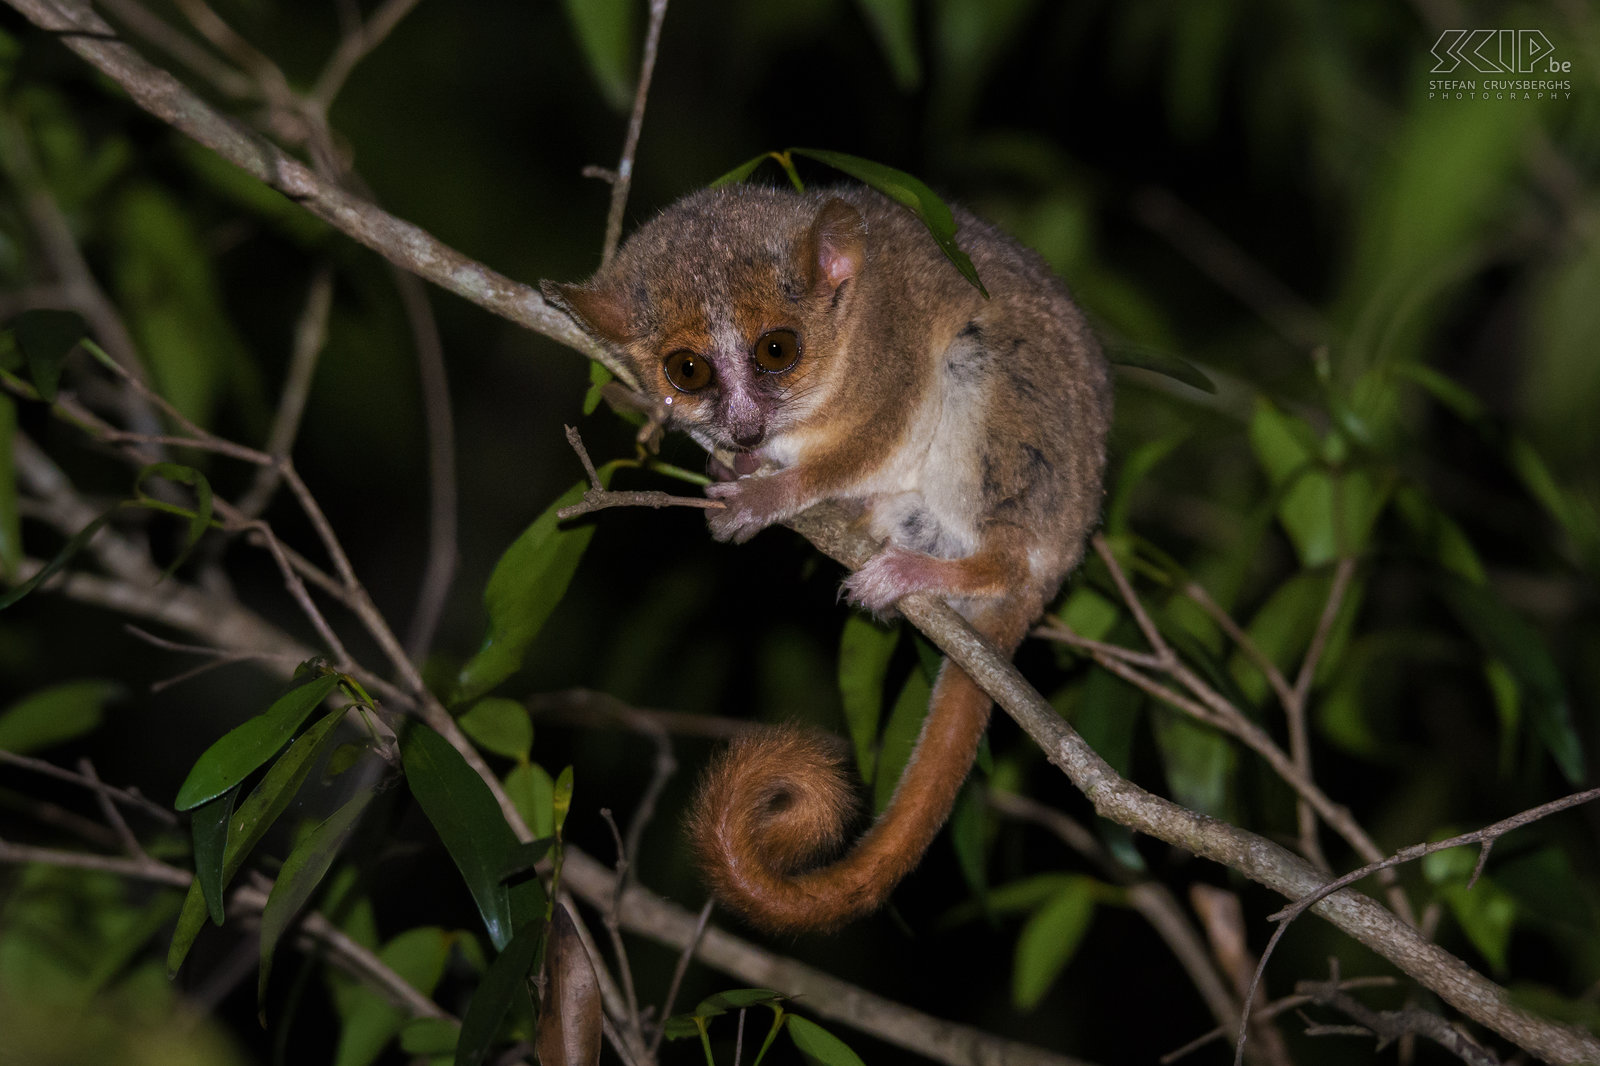 Kirindy - Dwergmuismaki De dwergmuismaki (Gray mouse lemur, Microcebus murinus) is niet alleen de kleinste maki maar ook ook een van de kleinste primaten ter wereld. Ze wegen 58-67 gram en het zijn nachtdieren. We zagen er een paar die tijdens onze nachtwandeling in Kirindy Forest. Stefan Cruysberghs